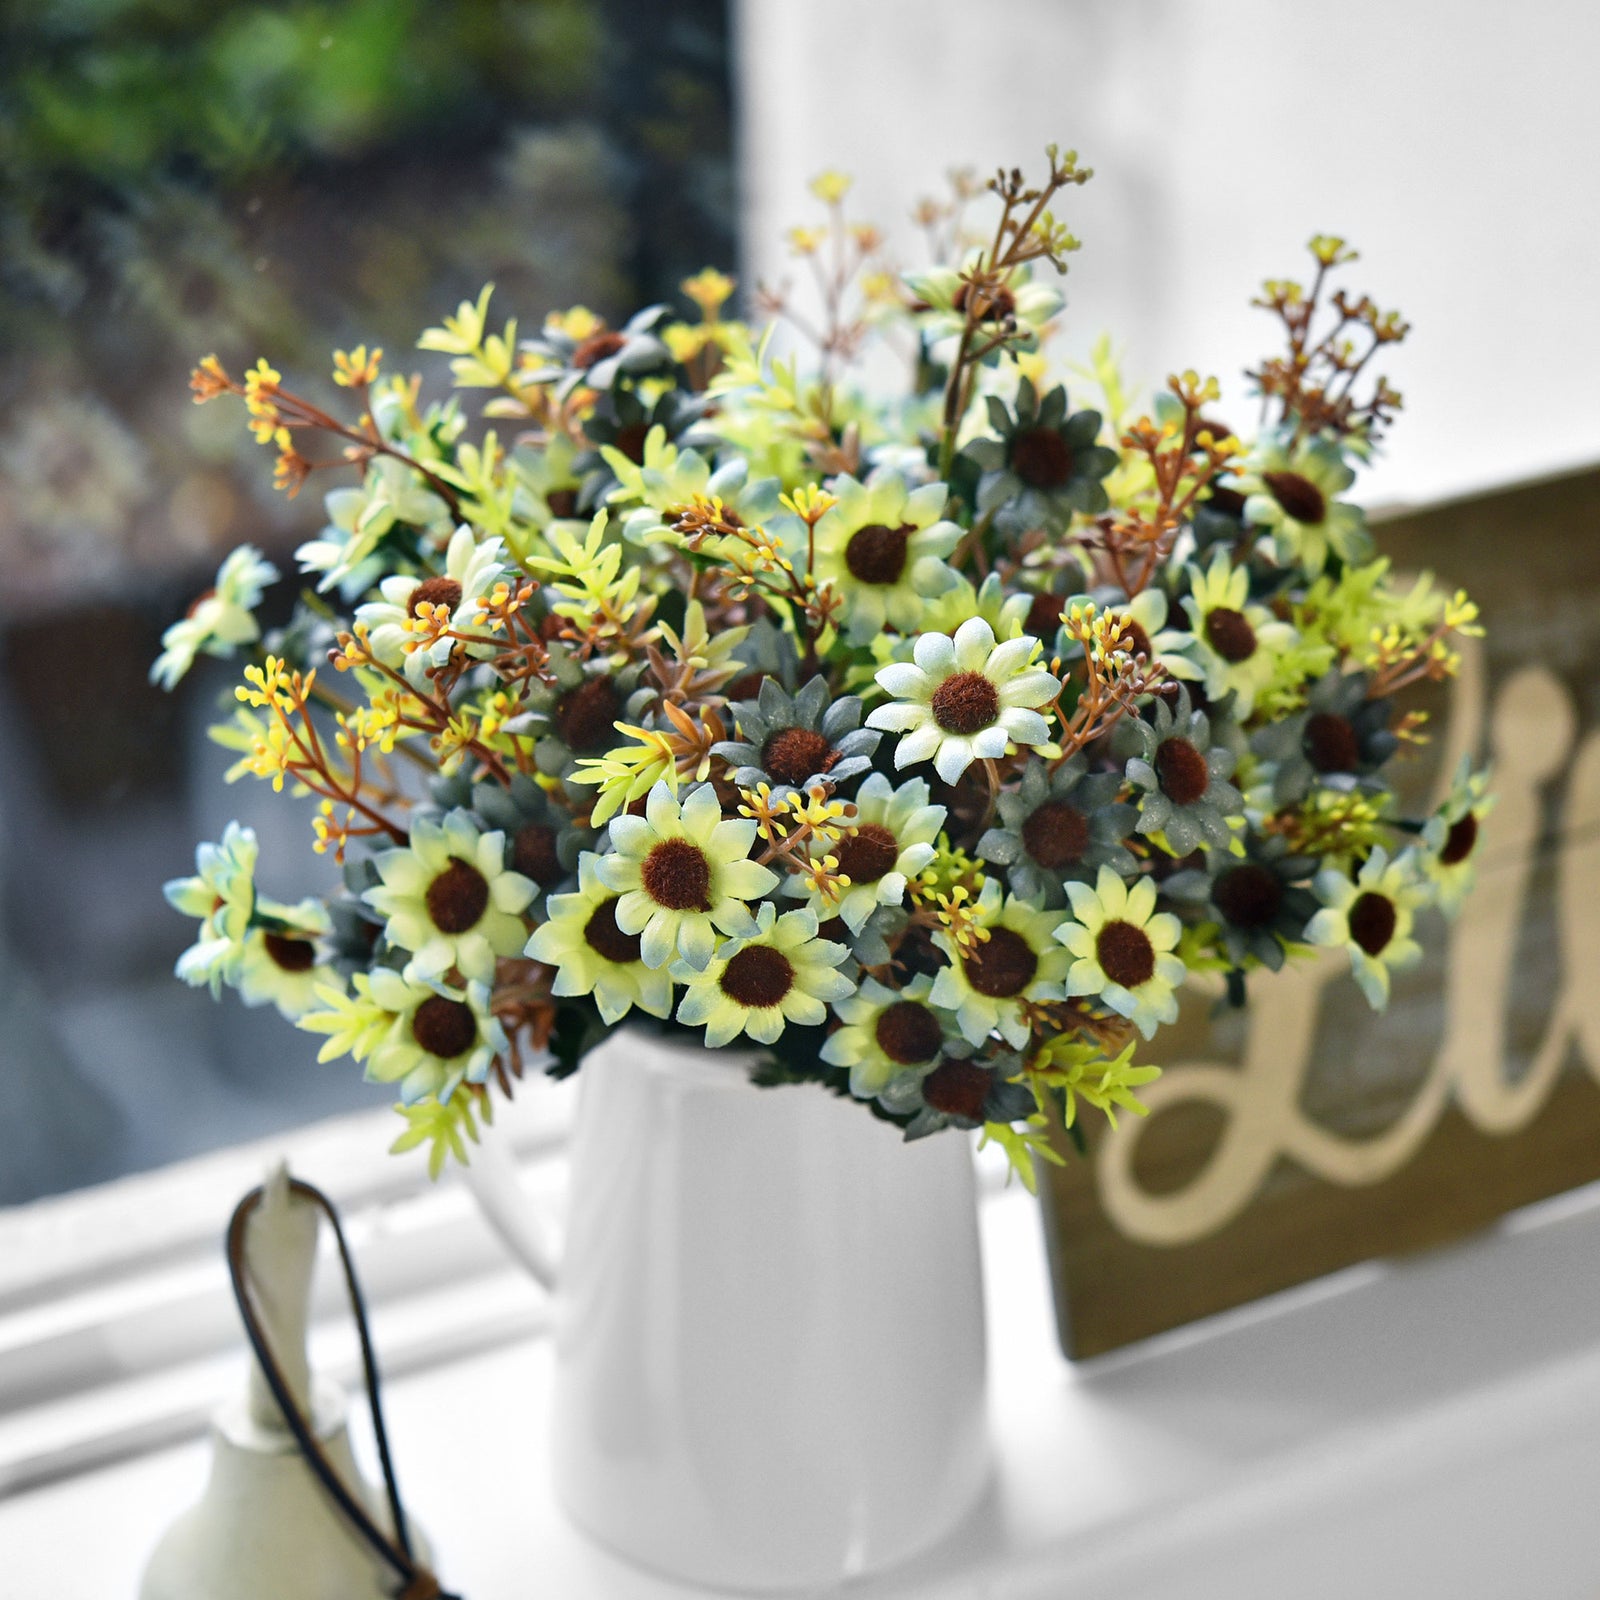 FiveSeasonStuff Daisy Silk Flowers, Outdoor Artificial Flowers Arrangement Decorations (4 Bundles,) 13 inches Tall (Yellow & Blue Rustic)